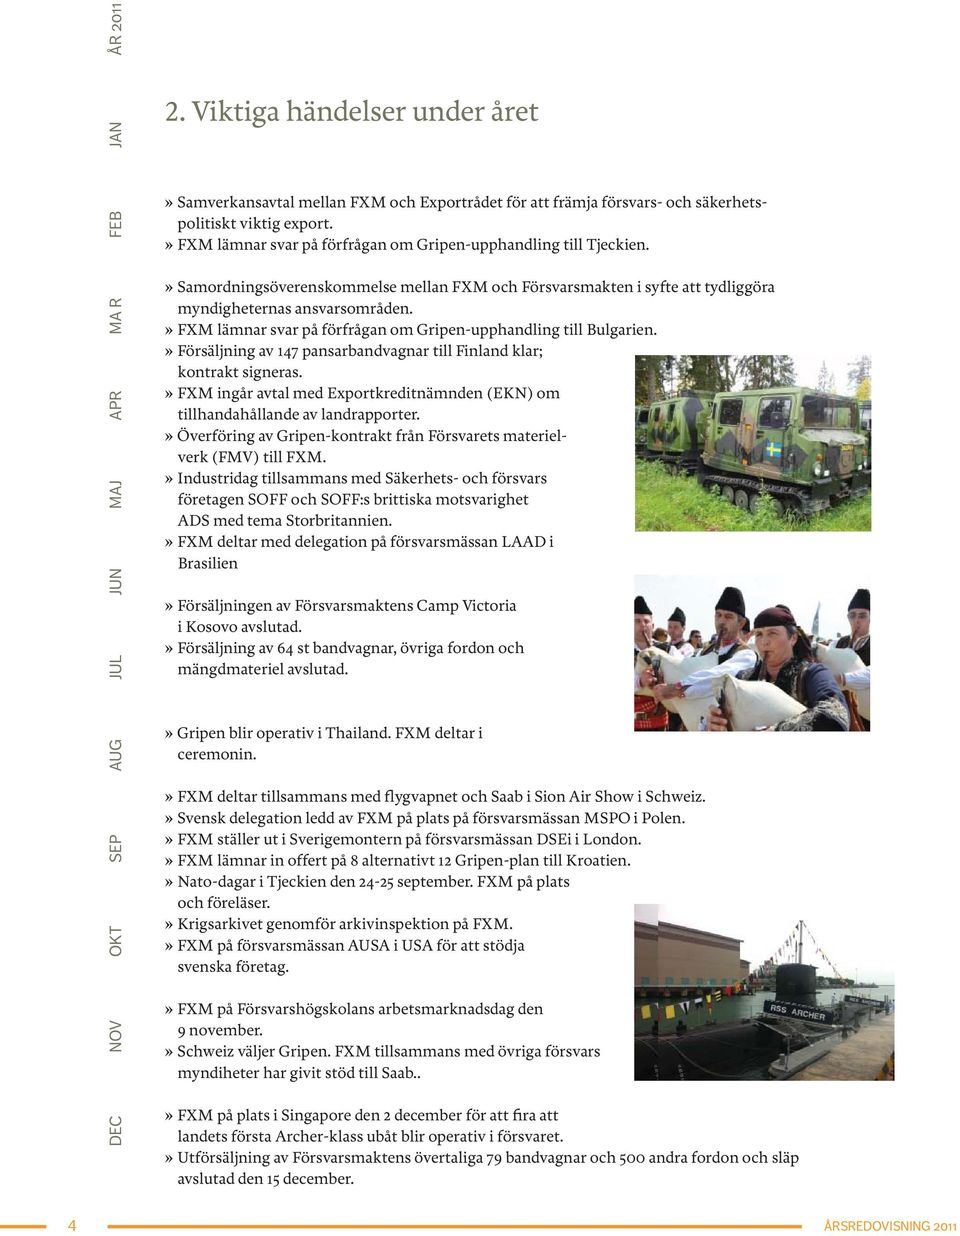 » FXM lämnar svar på förfrågan om Gripen-upphandling till Bulgarien.» Försäljning av 147 pansarbandvagnar till Finland klar; kontrakt signeras.